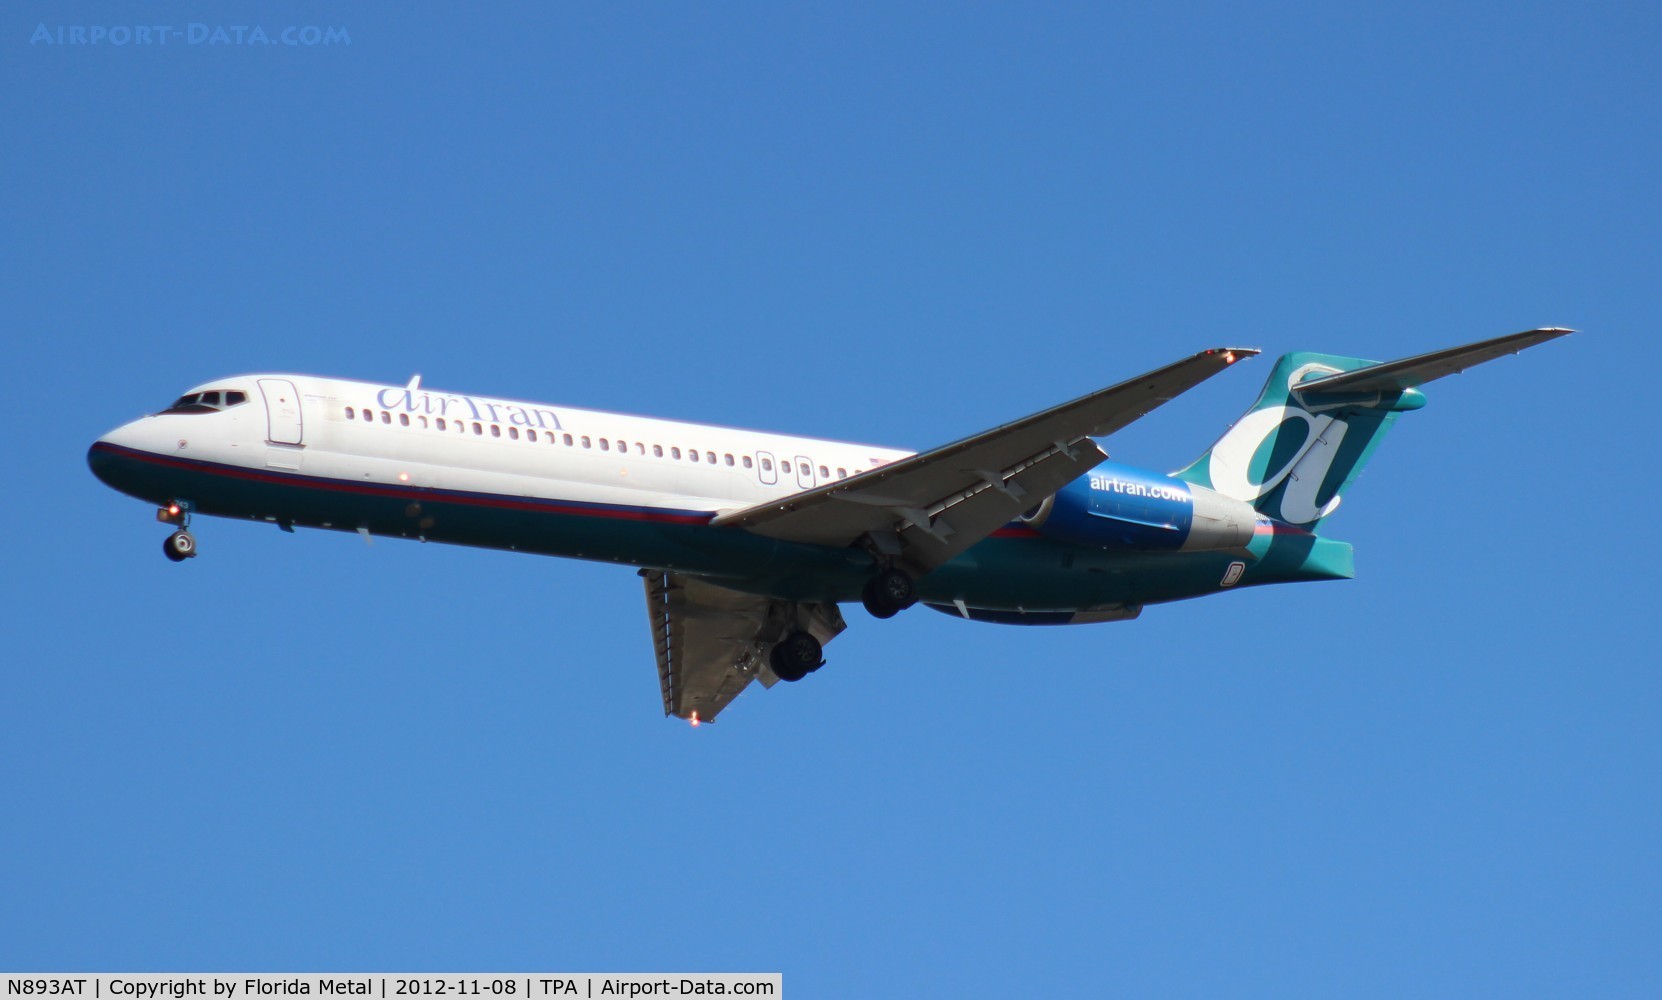 N893AT, 2004 Boeing 717-200 C/N 55045, Air Tran 717